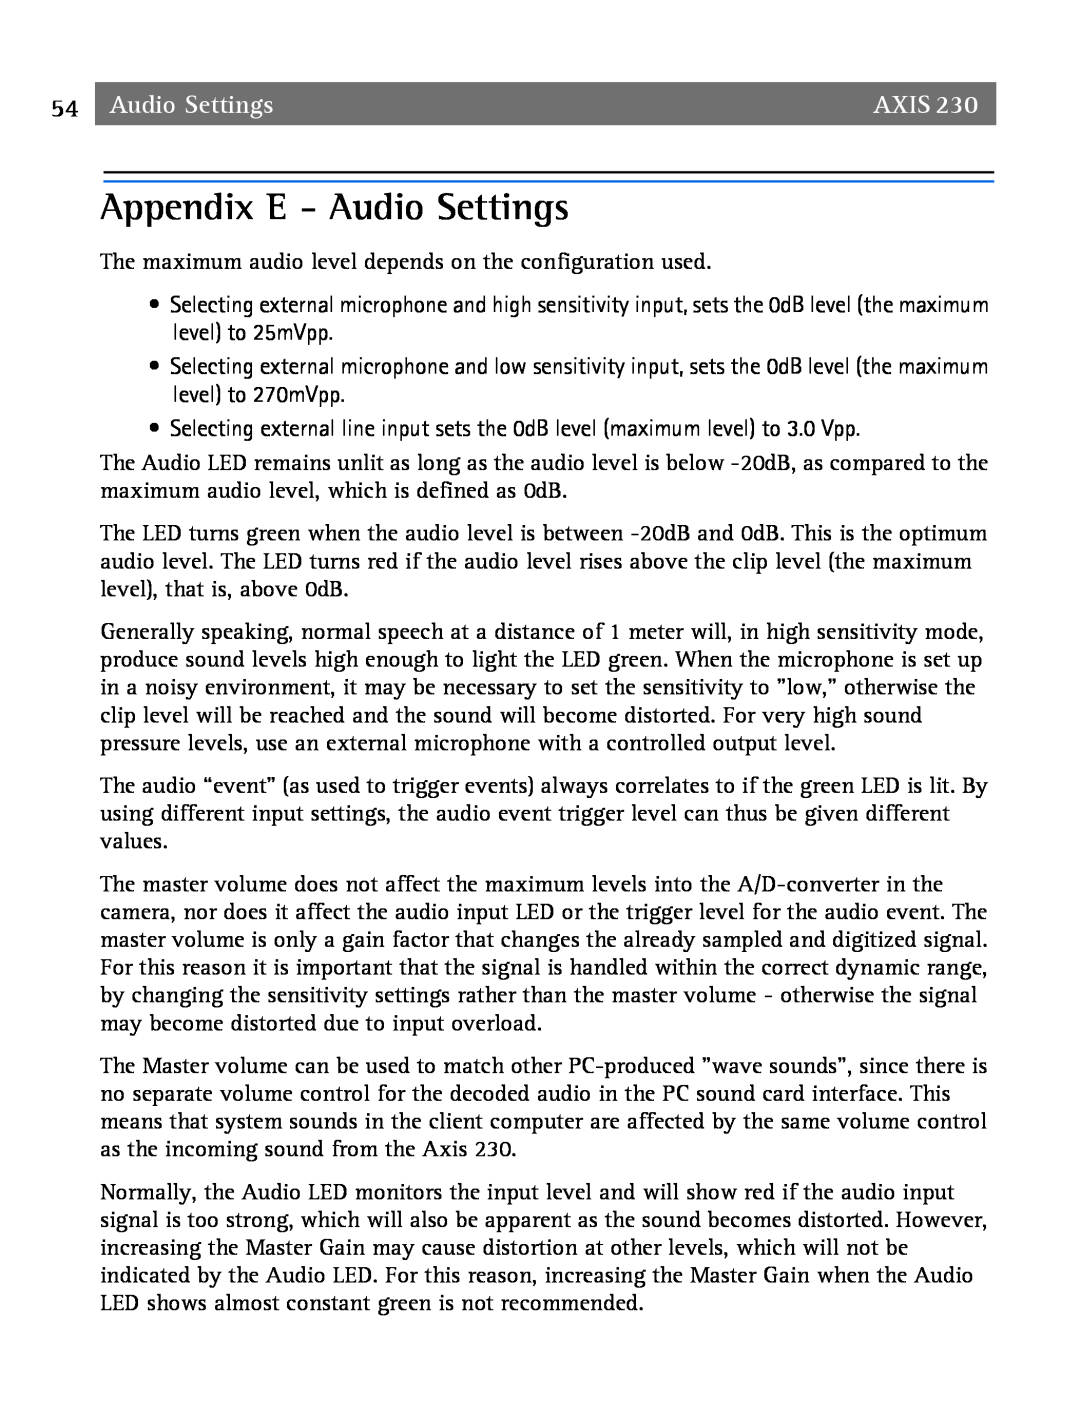 Axis Communications 2 user manual Appendix E - Audio Settings, Axis 